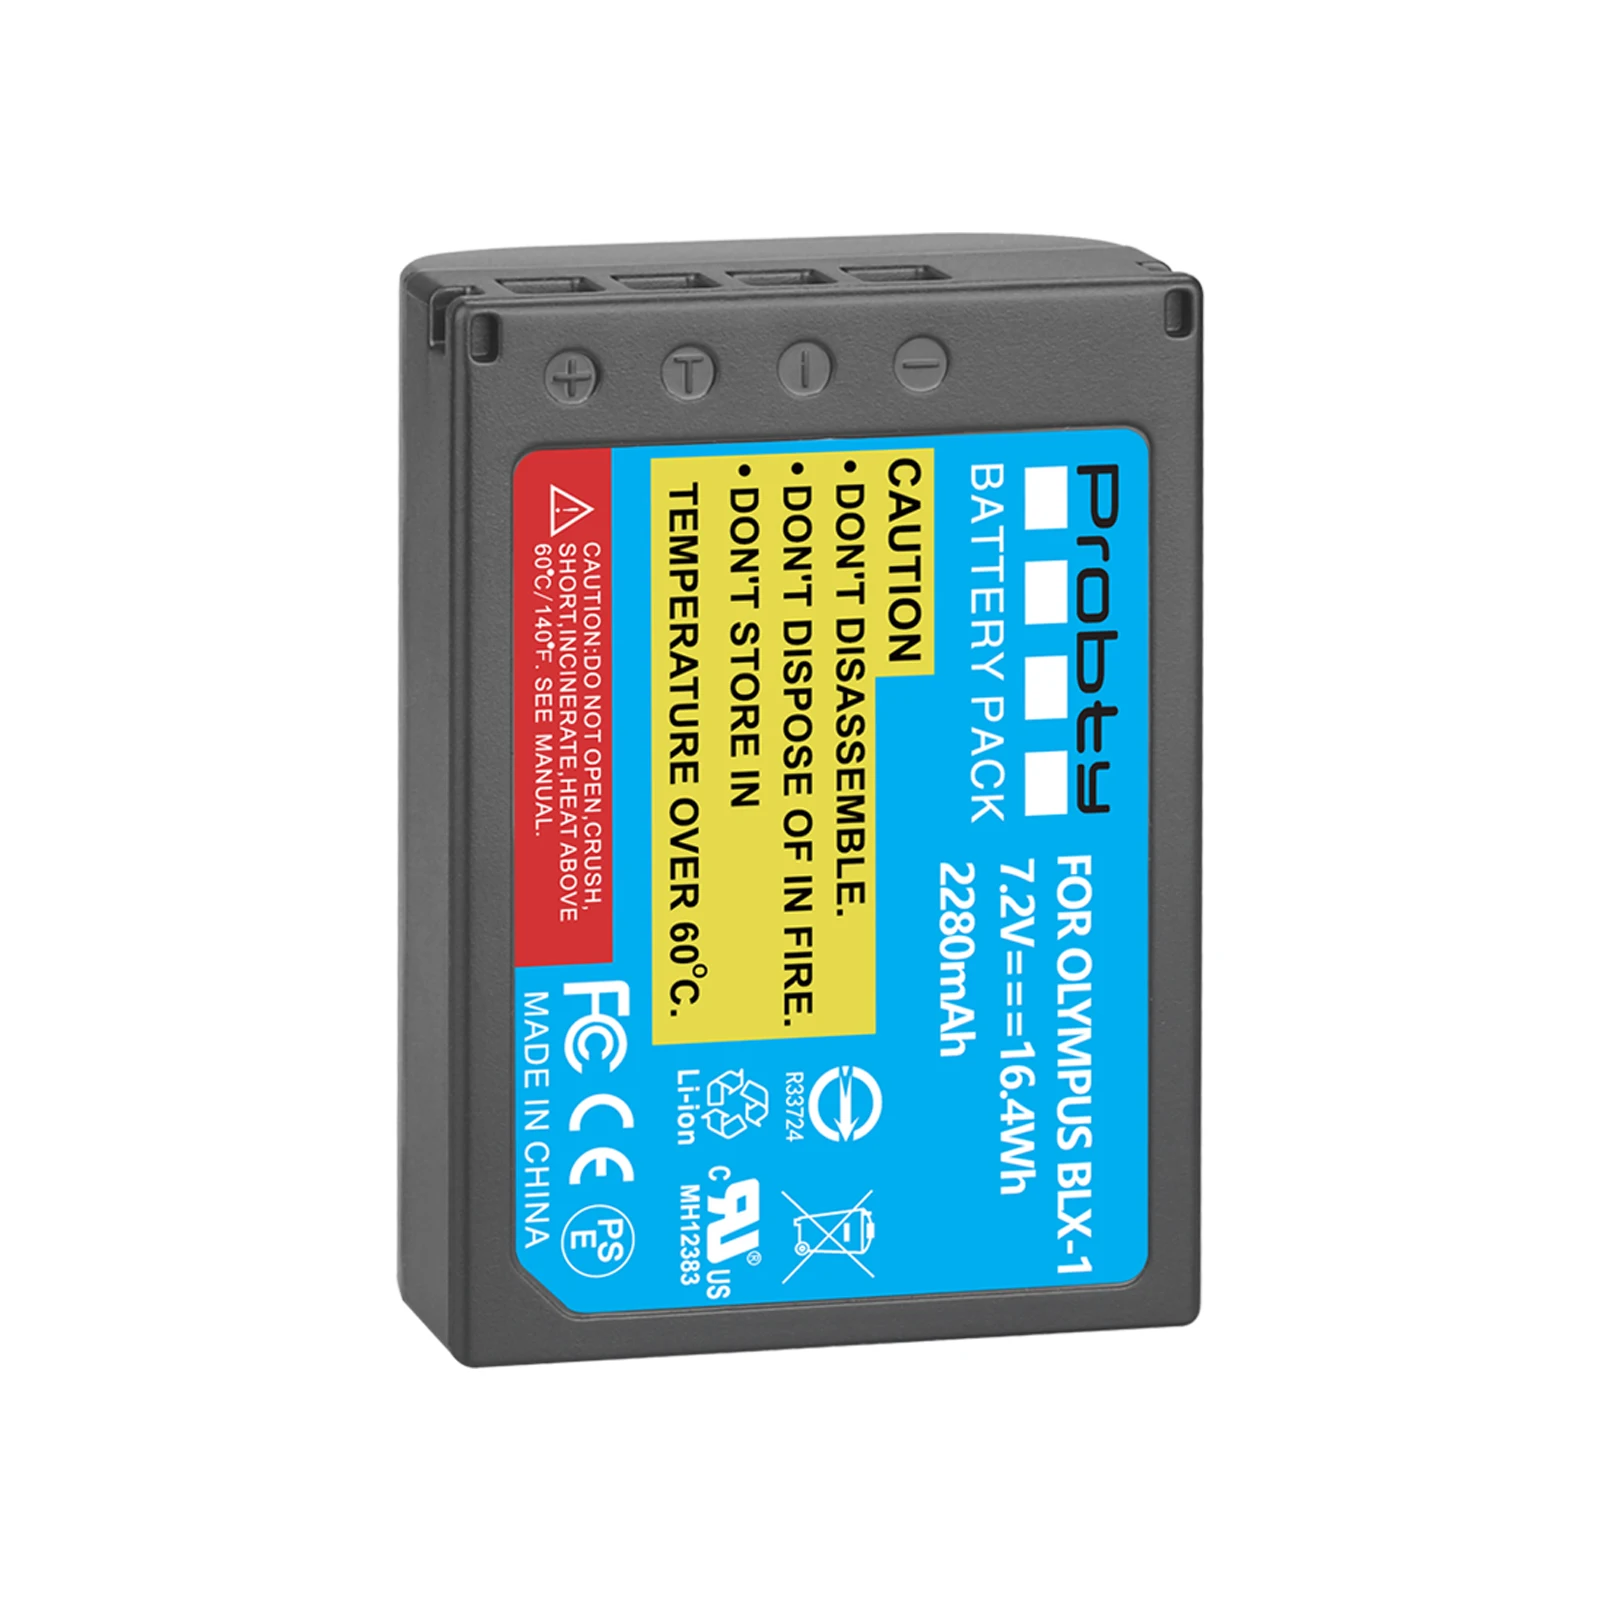 Slika /cdn/4-Blx-1-blx1-baterija-2280-mah-led-dual-usb-punjač-za-thumbs-762.jpeg